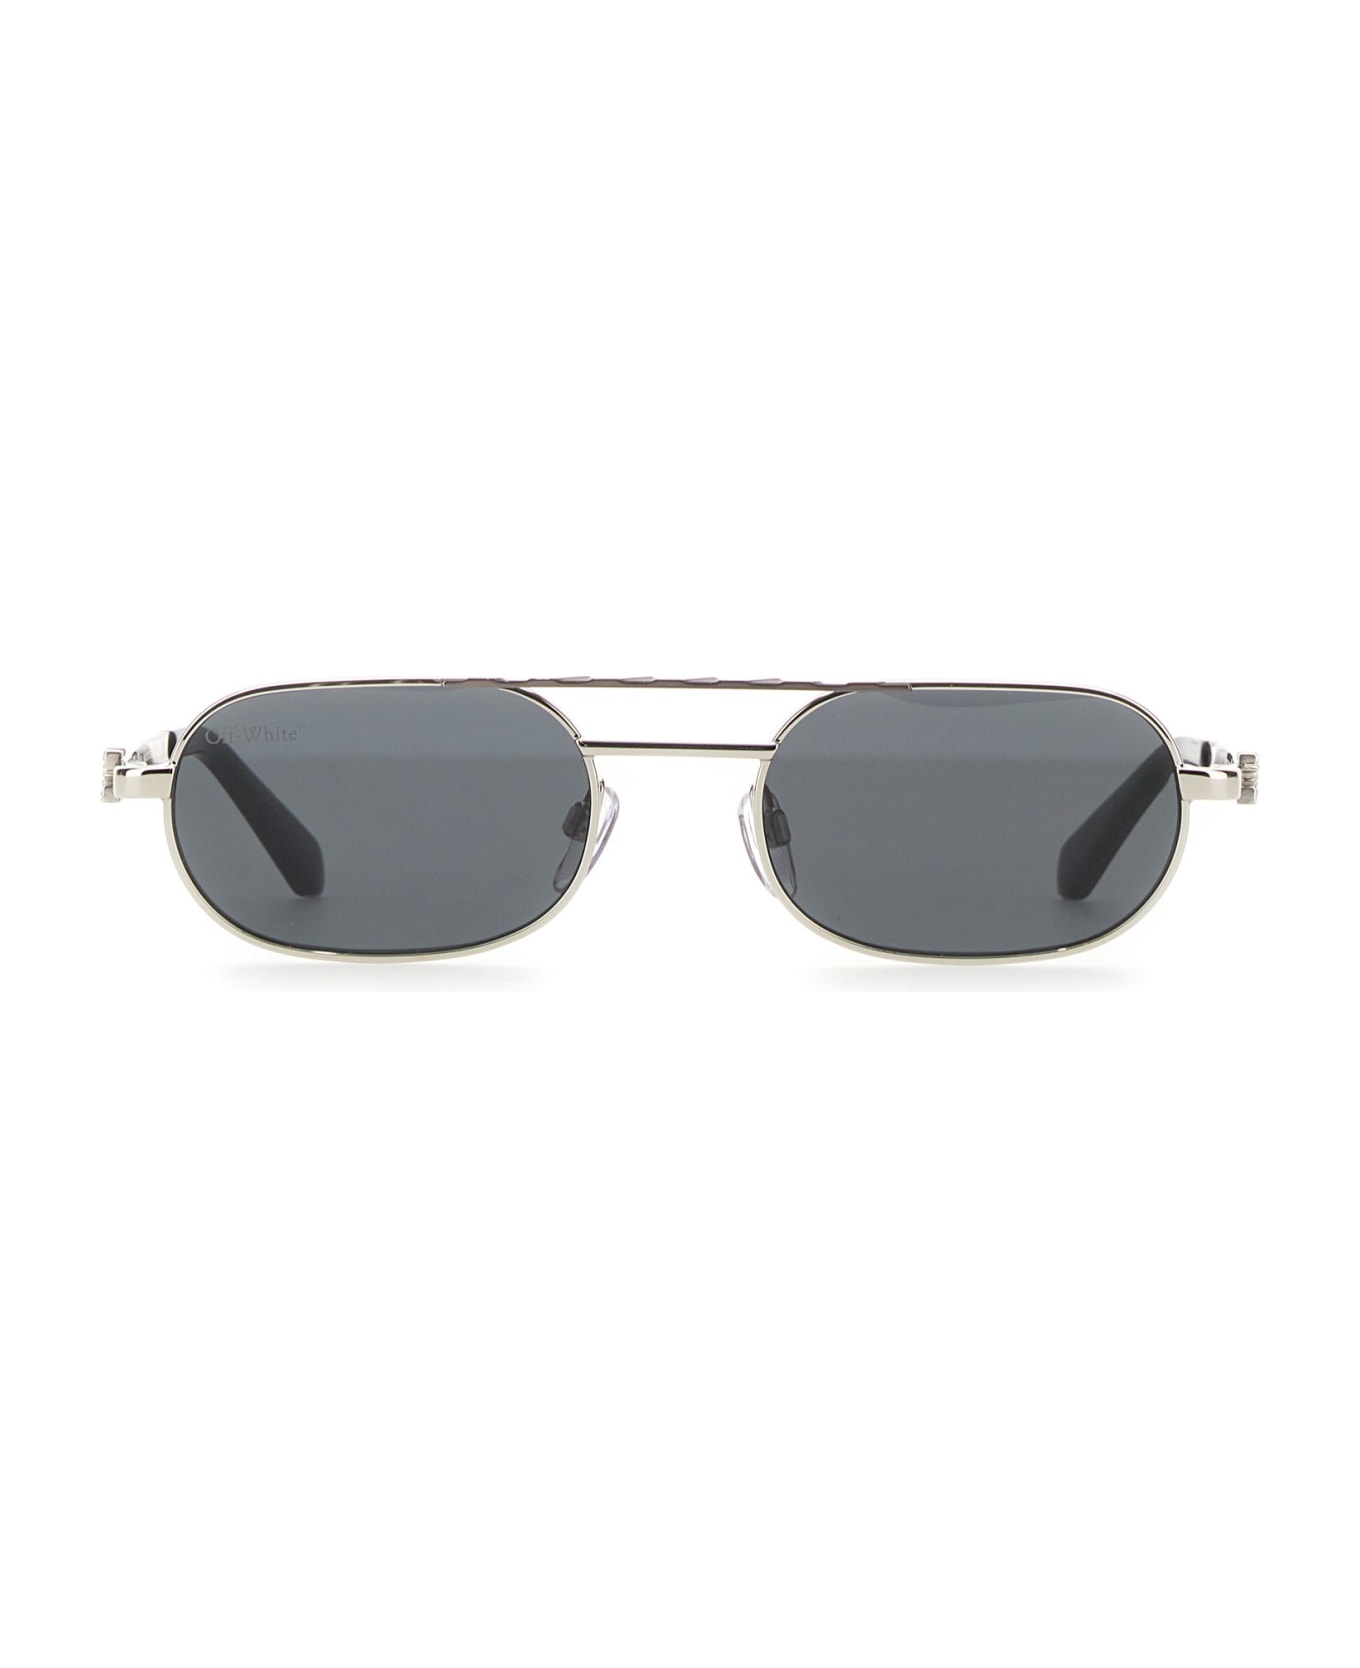 Off-White Baltimore Sunglasses - Argento